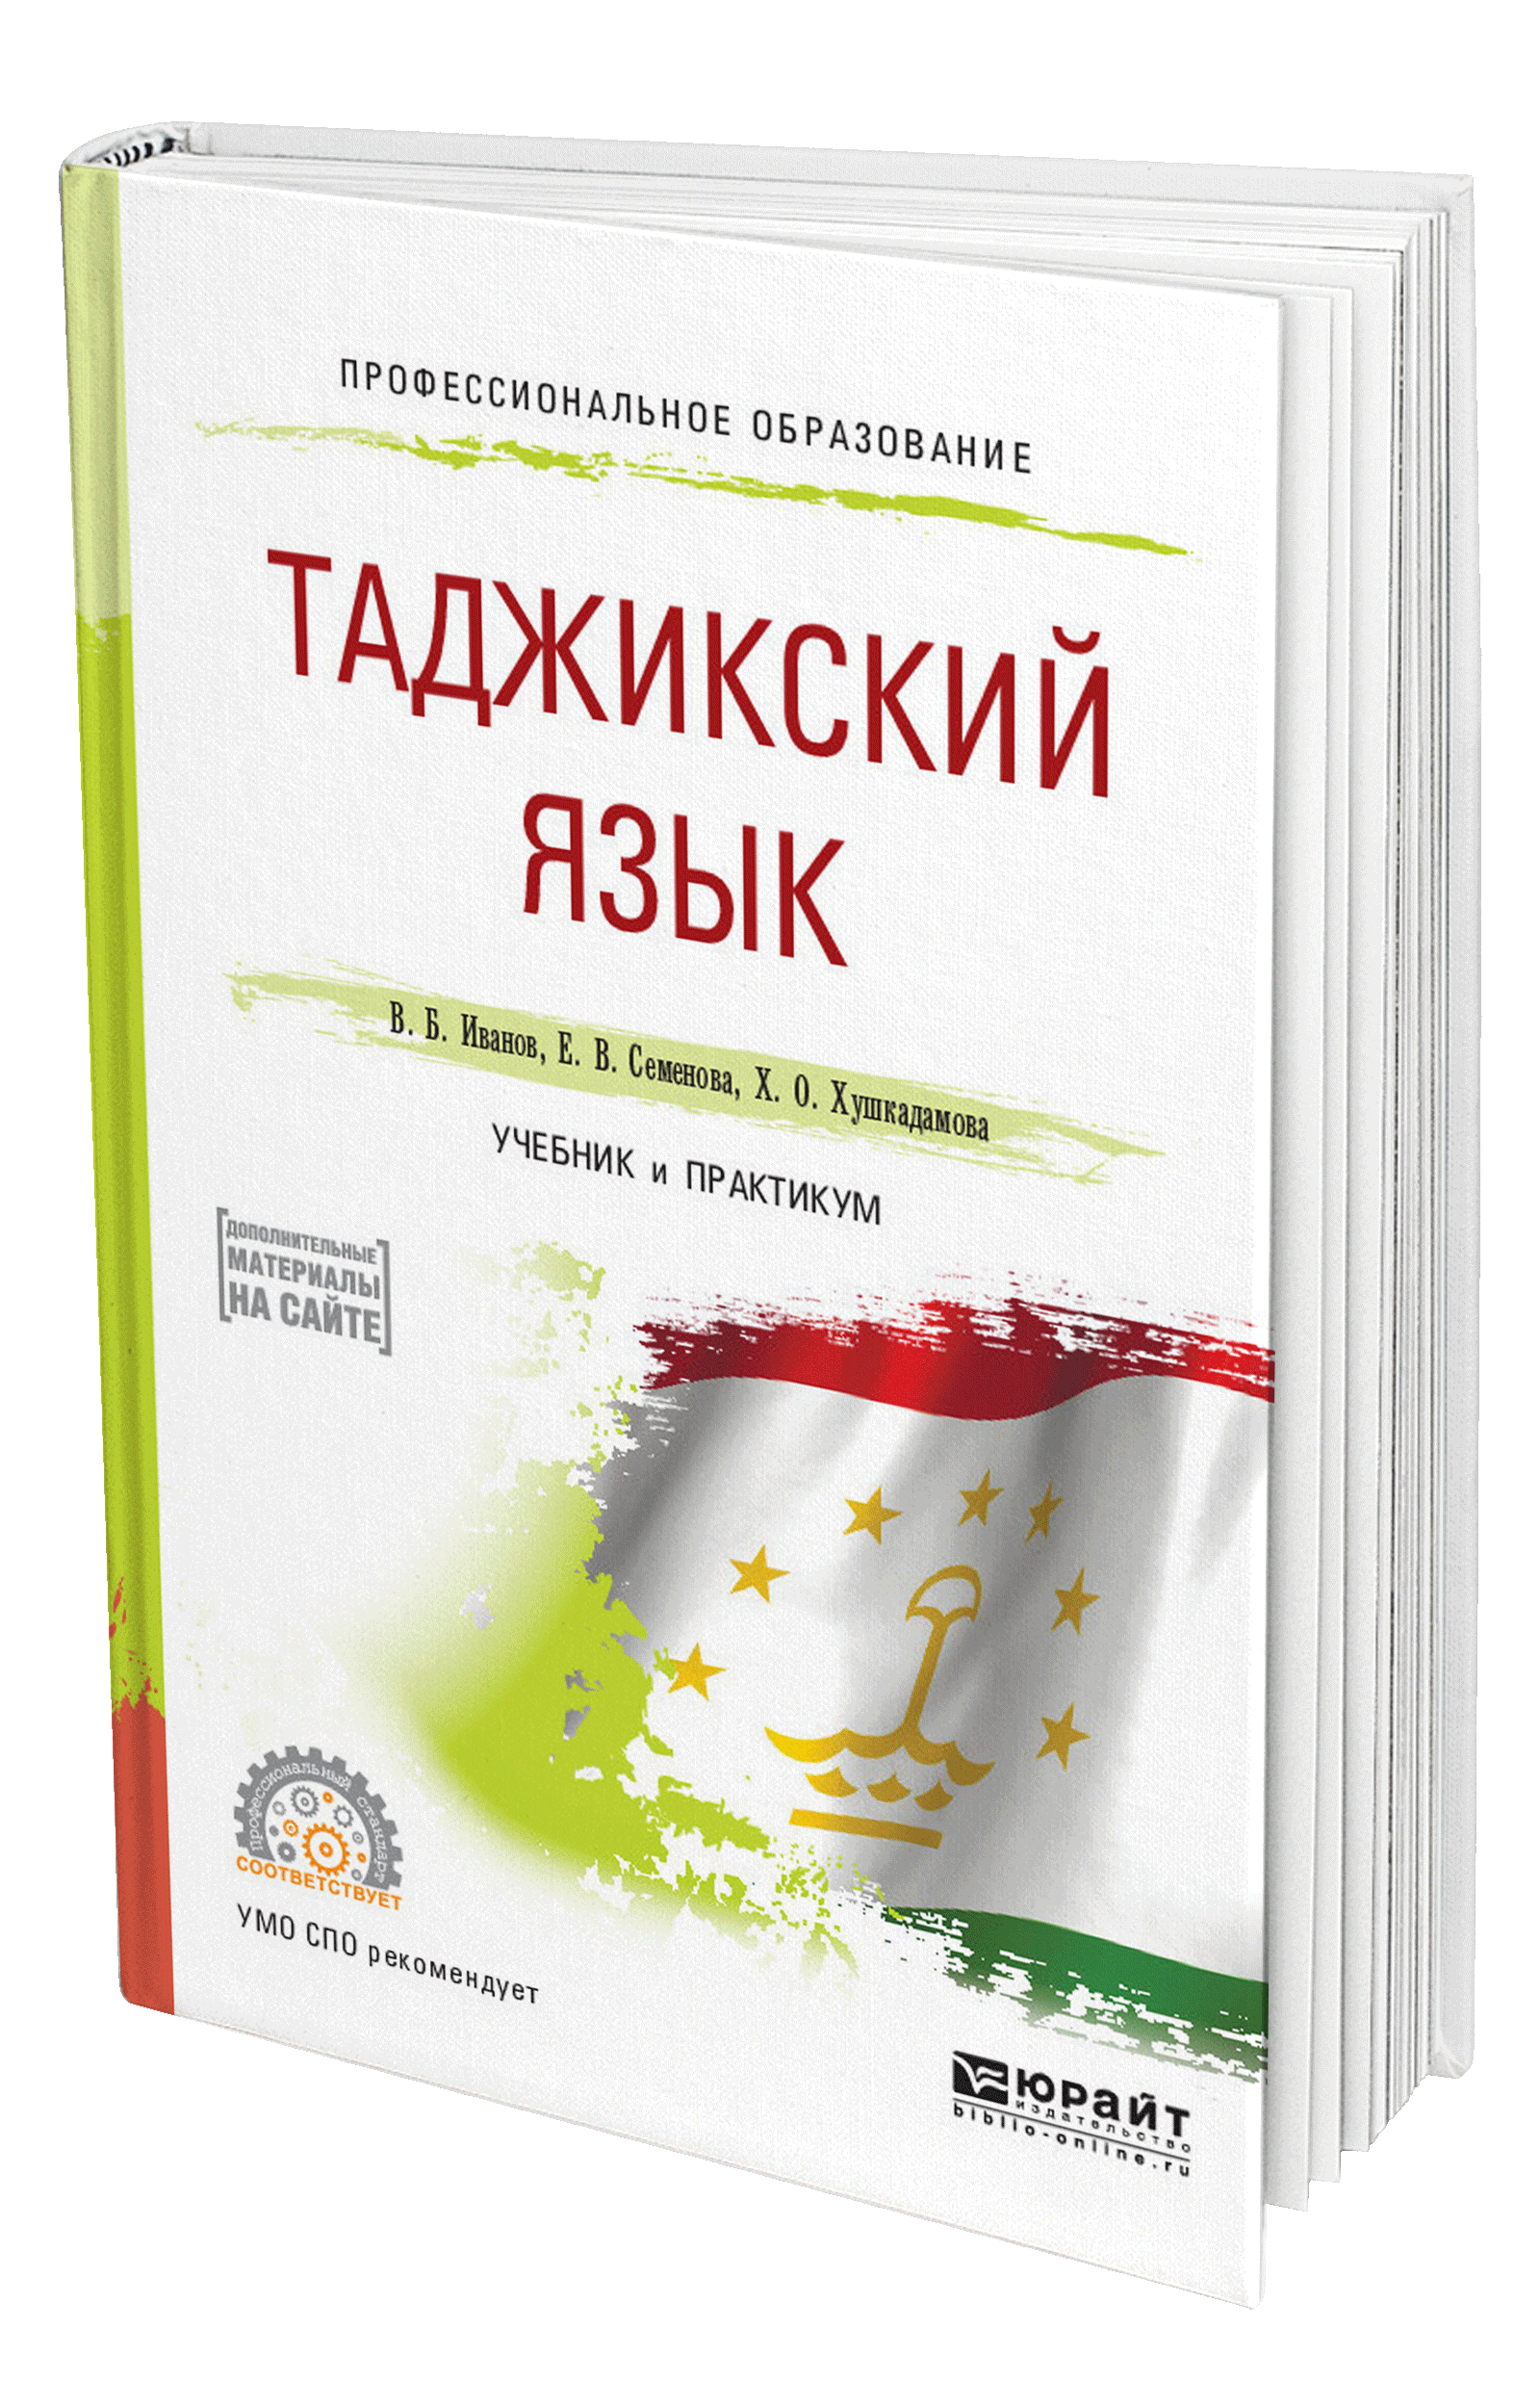 Обучение таджикскому языку. Книги на таджикском языке. Учебник таджикского языка. Таджикский язык. Самоучитель таджикского языка.